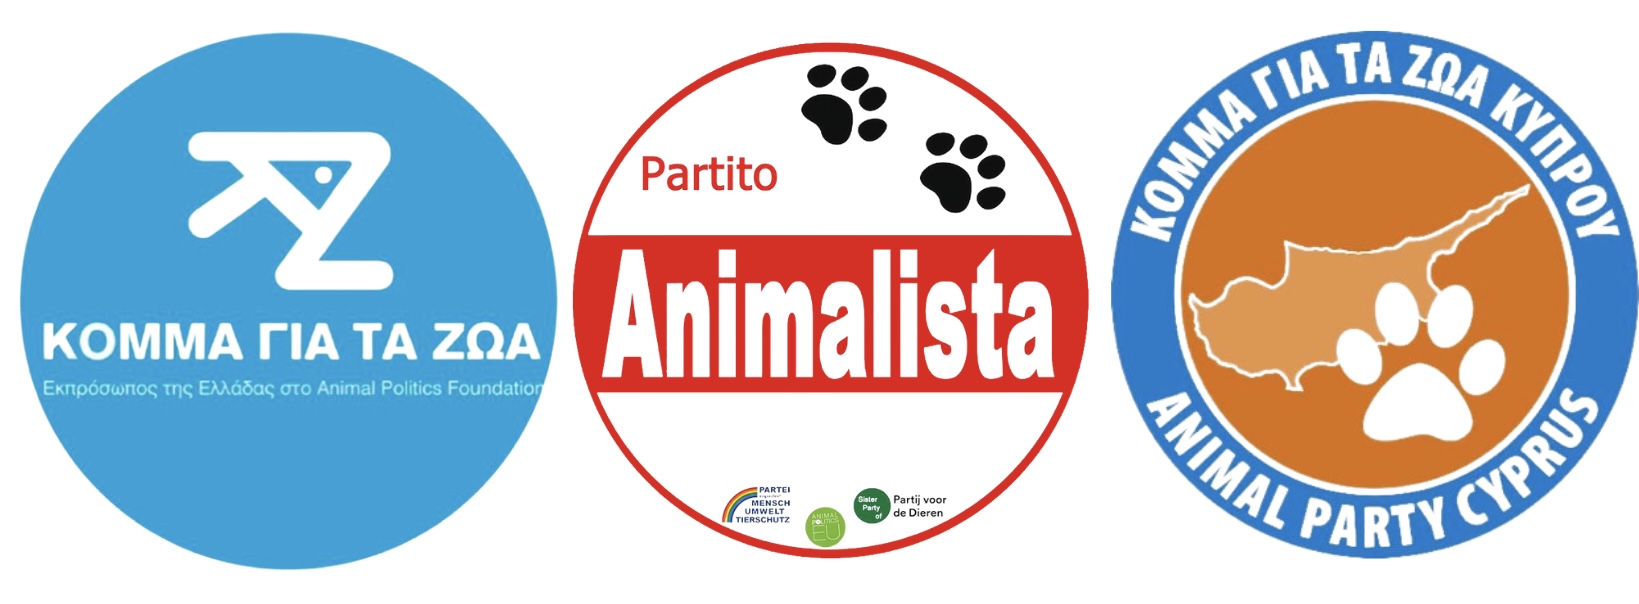 Τρία φιλοζωικά κόμματα συντονίζουν τις προσπάθειές τους για να σωθούν τα ζώα στο Ελμπεΐκ